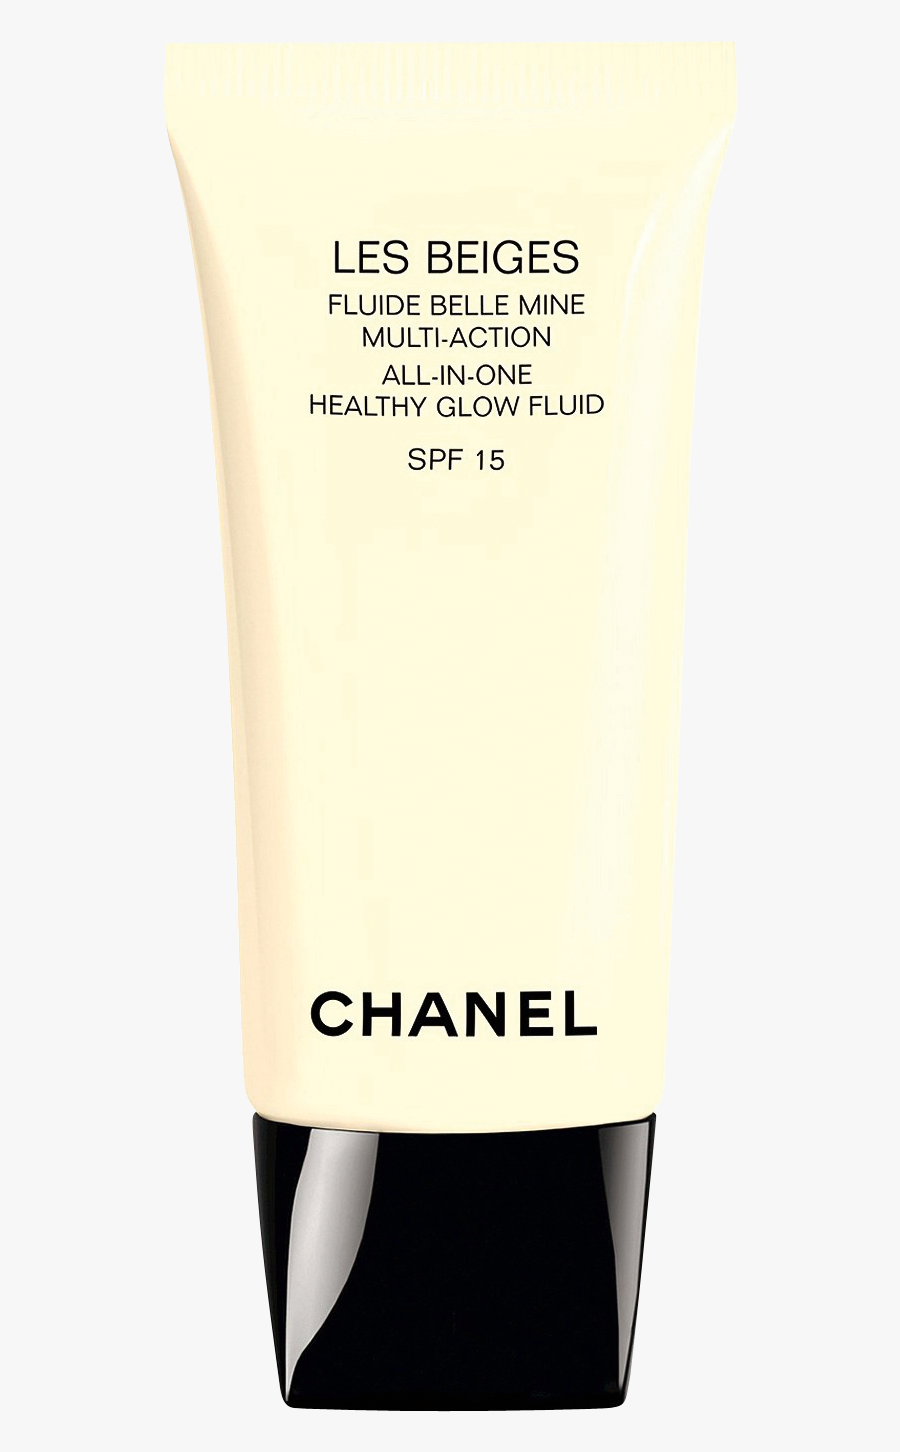 Beiges Beauty Healthy Fluid Lotion Les Make-up Clipart - Plastic, Transparent Clipart